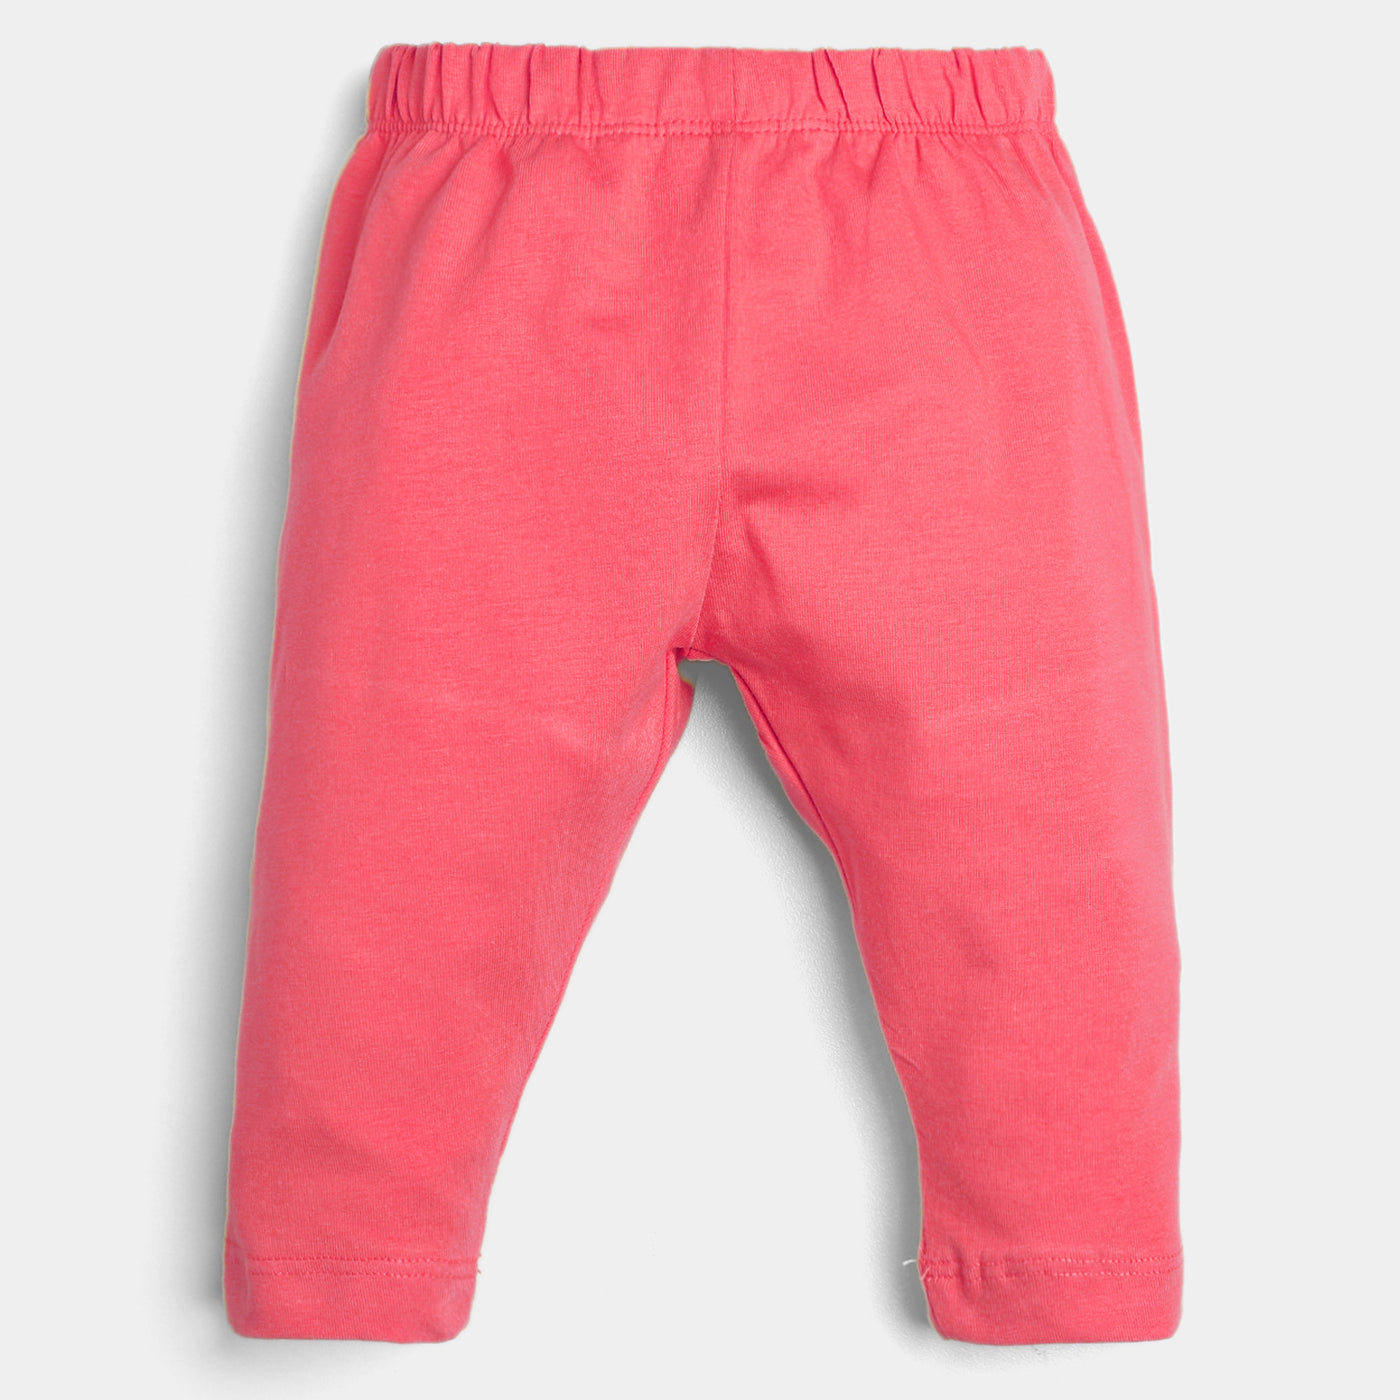 Infant Girls Lycra Basic Tights-Pink